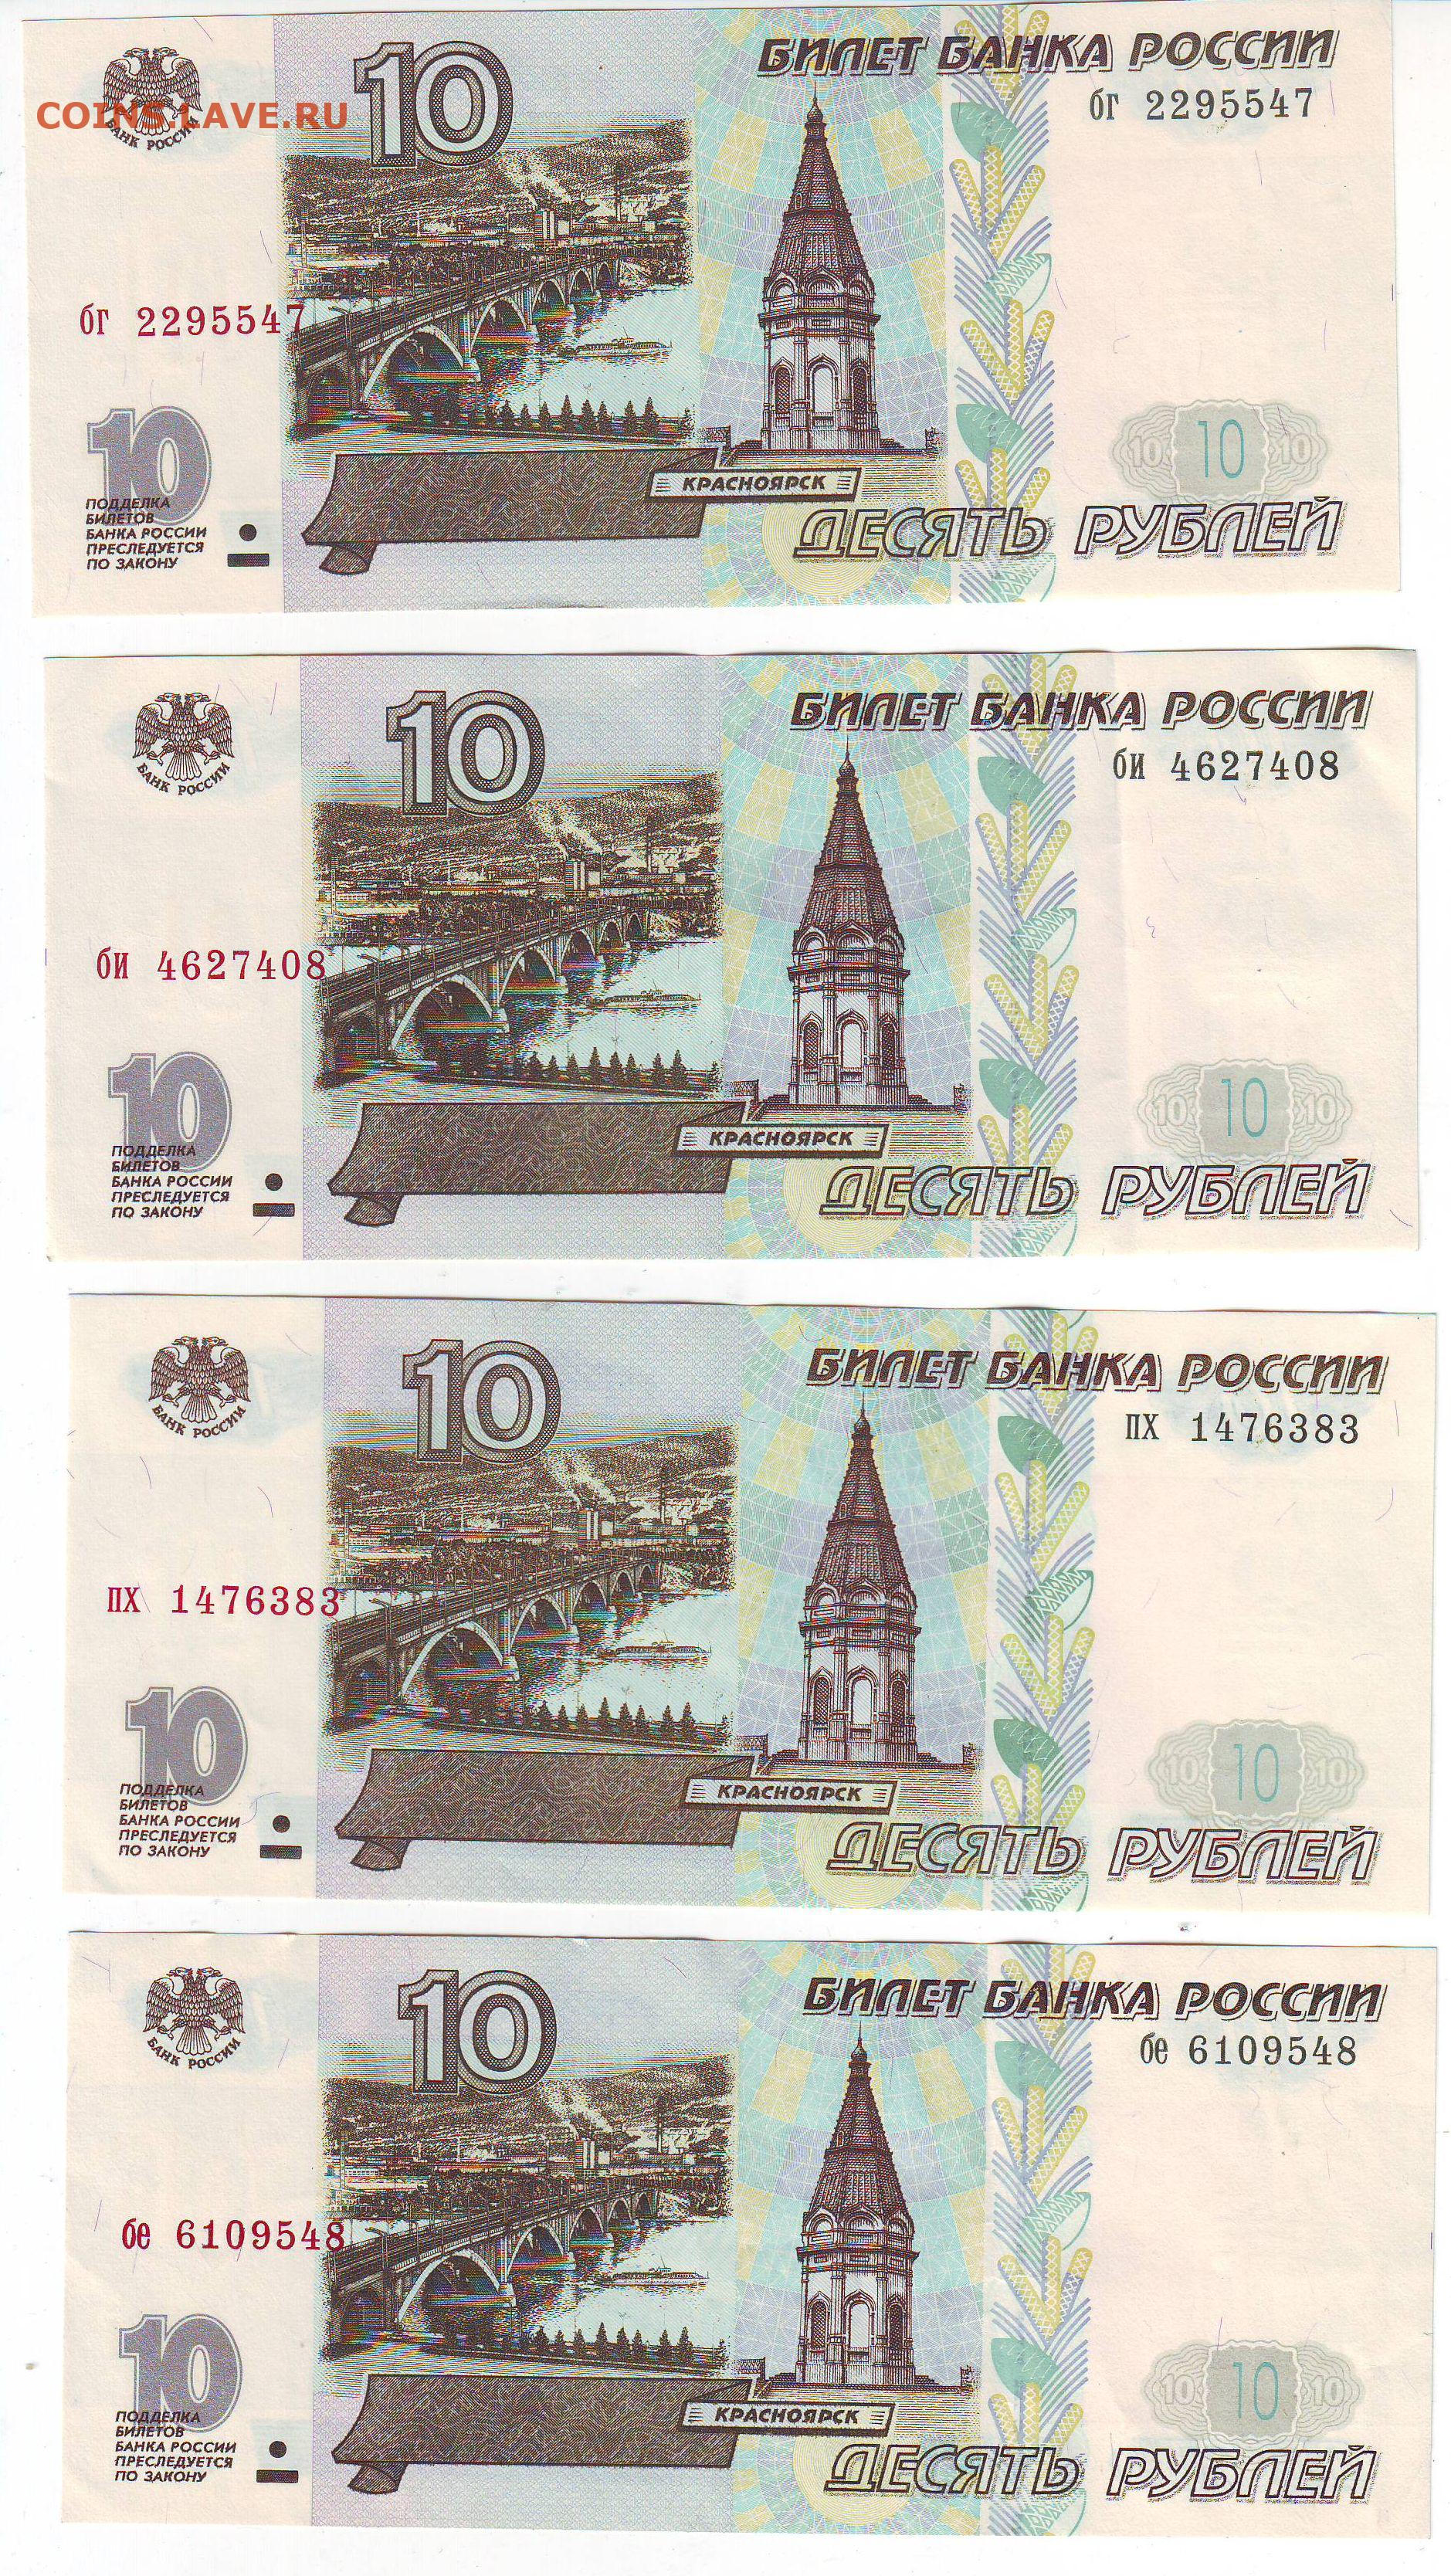 10 рублей билет. 10 Рублей билет банка России. 10 Рублей модификация. 5 Рублевая купюра 1997 года. Десять рублей 1997 года без модификации.